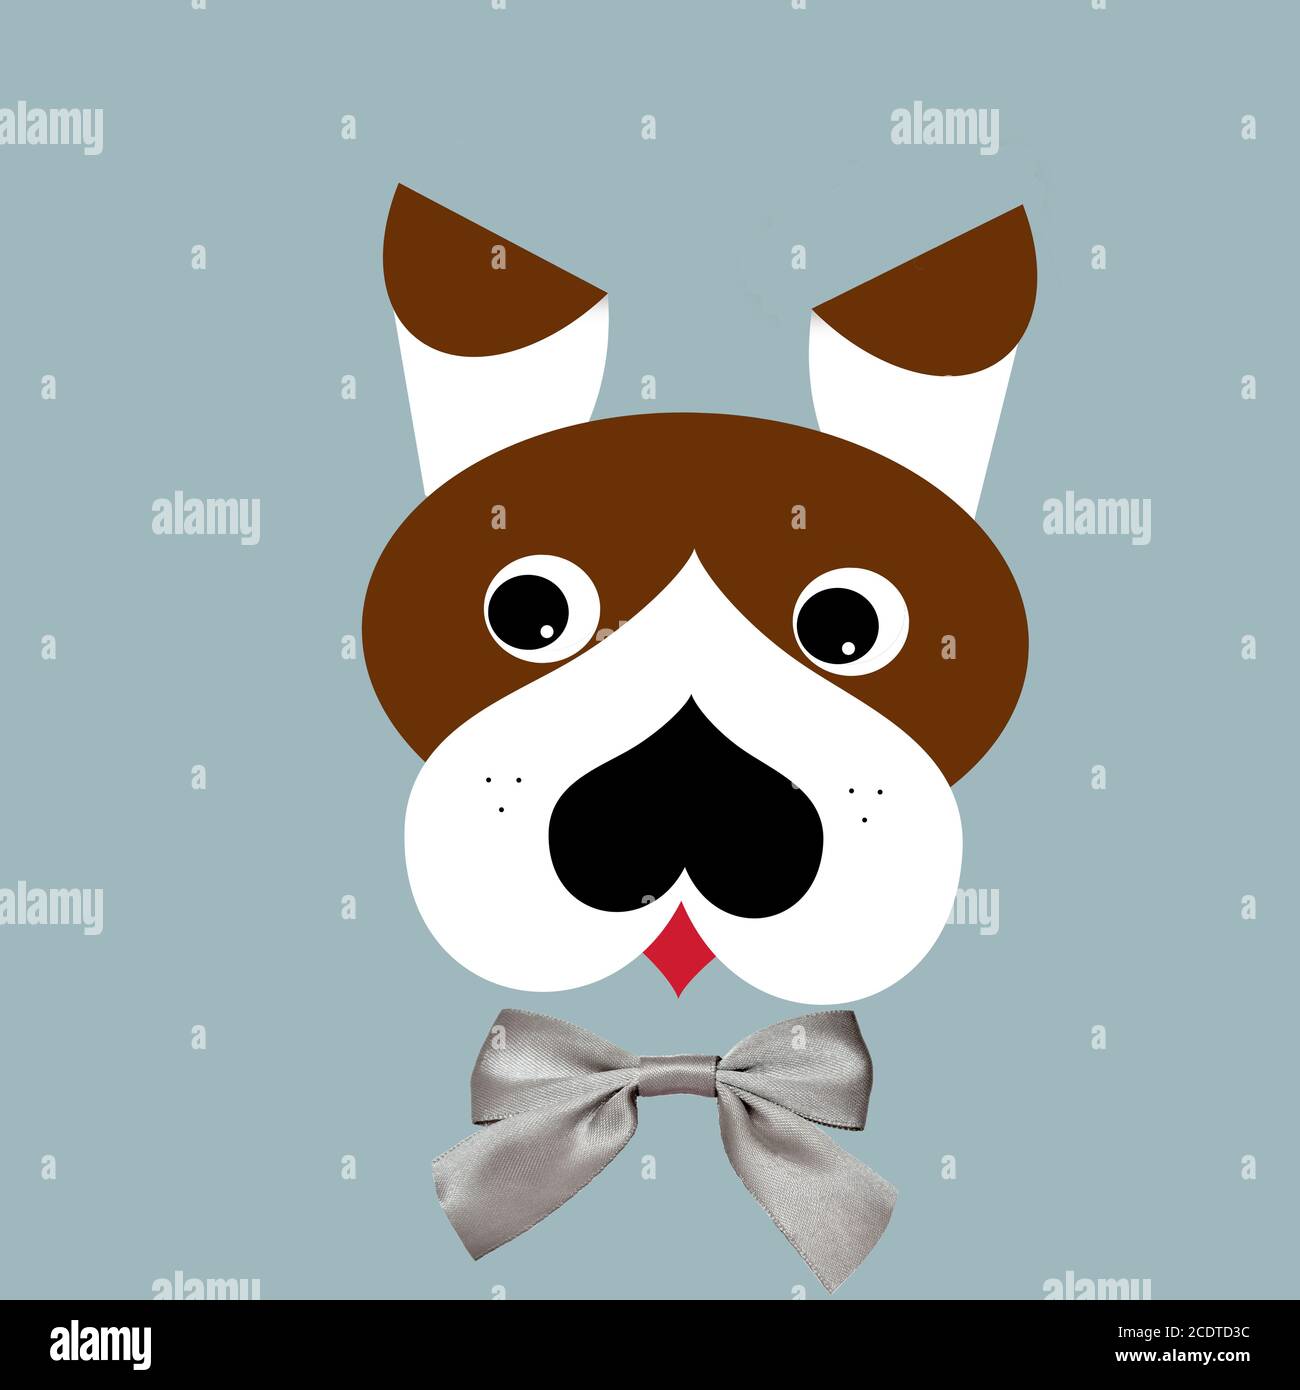 Joli portrait de chien avec noeud en ruban - illustration numérique Banque D'Images